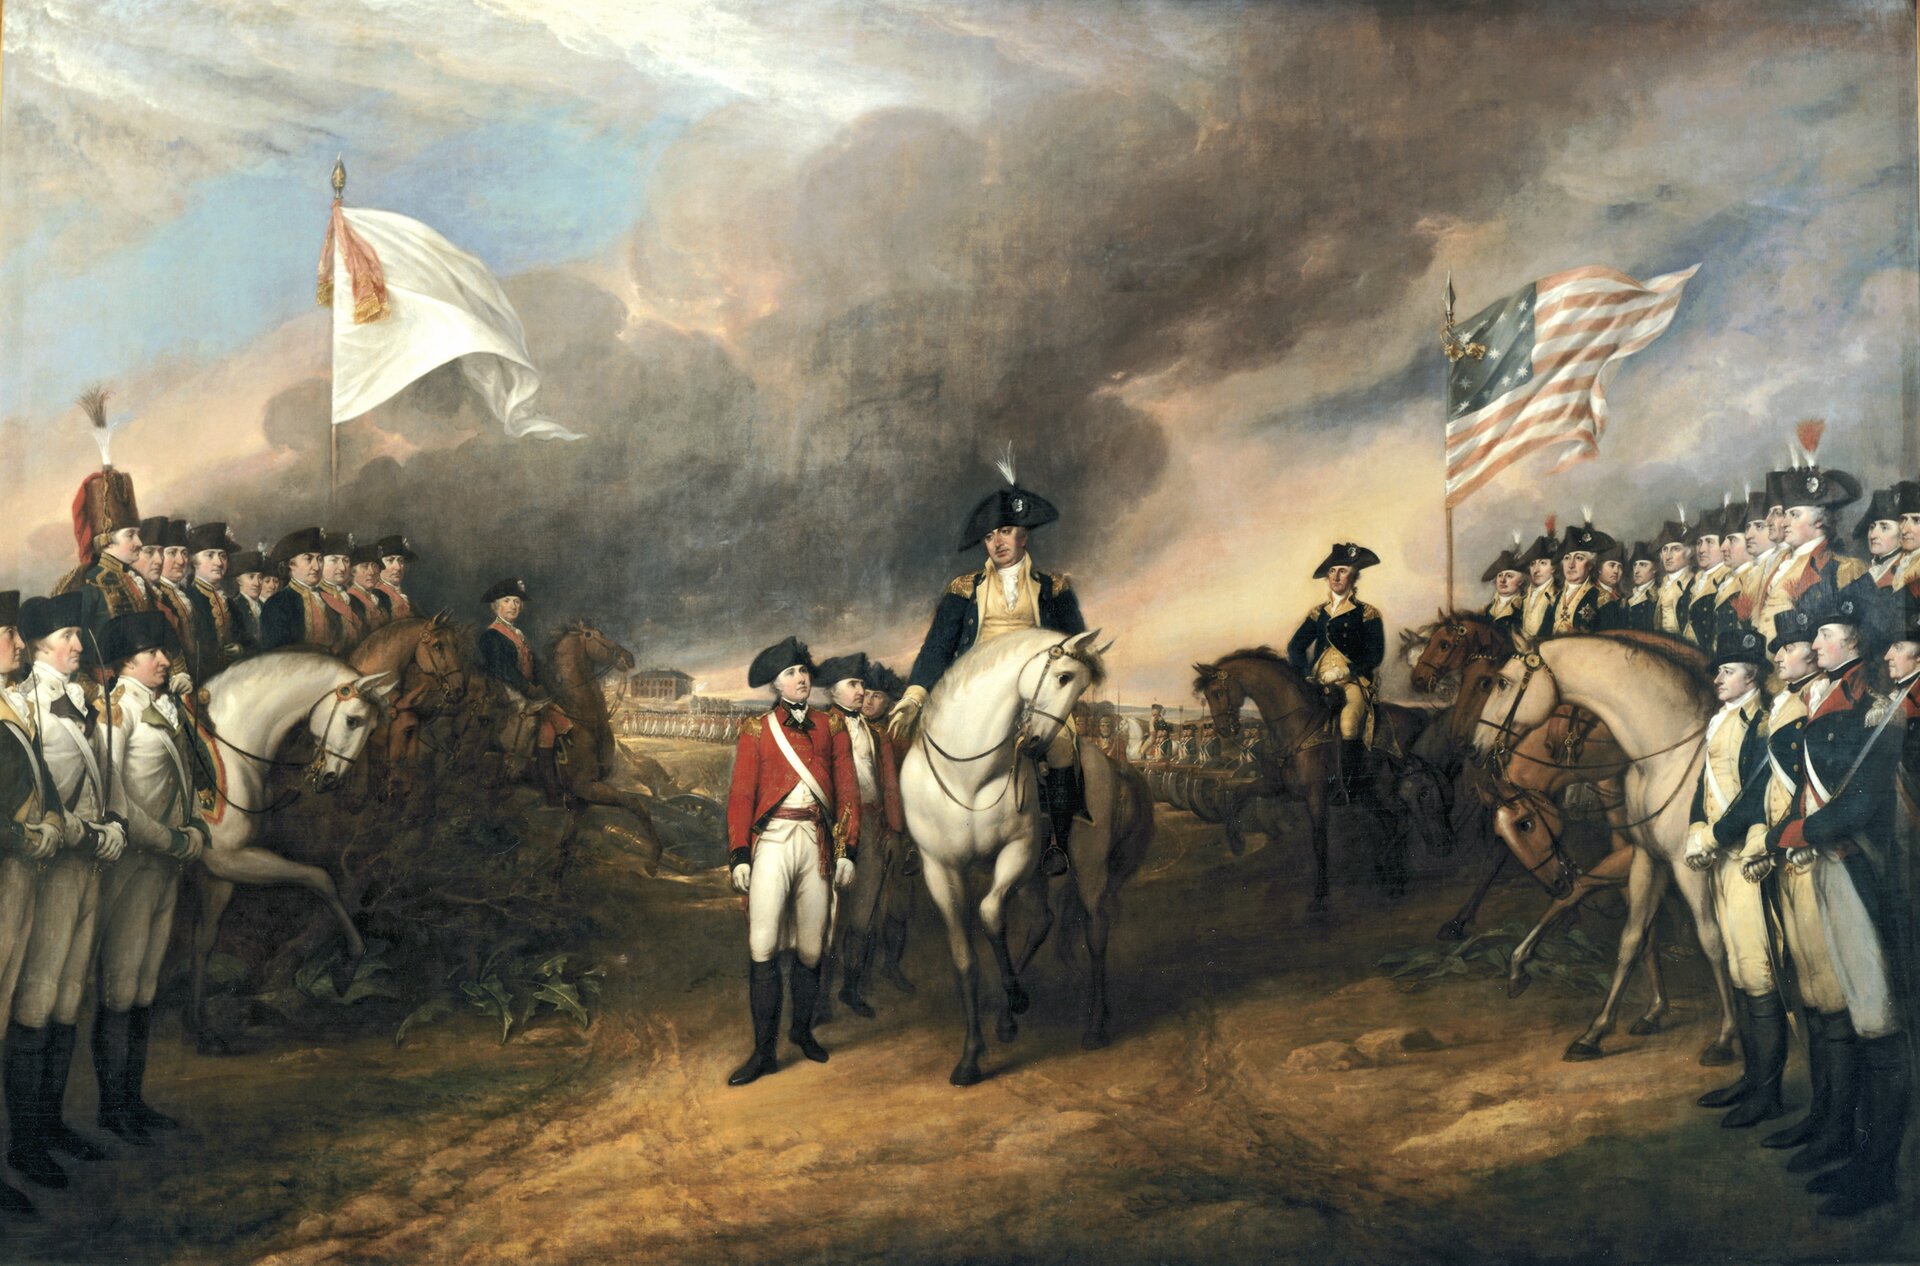 Kapitulacja pod Yorktown Źródło: John Trumbull, Kapitulacja pod Yorktown, 1820, olej na płótnie, Rotunda of the US Capitol, domena publiczna.